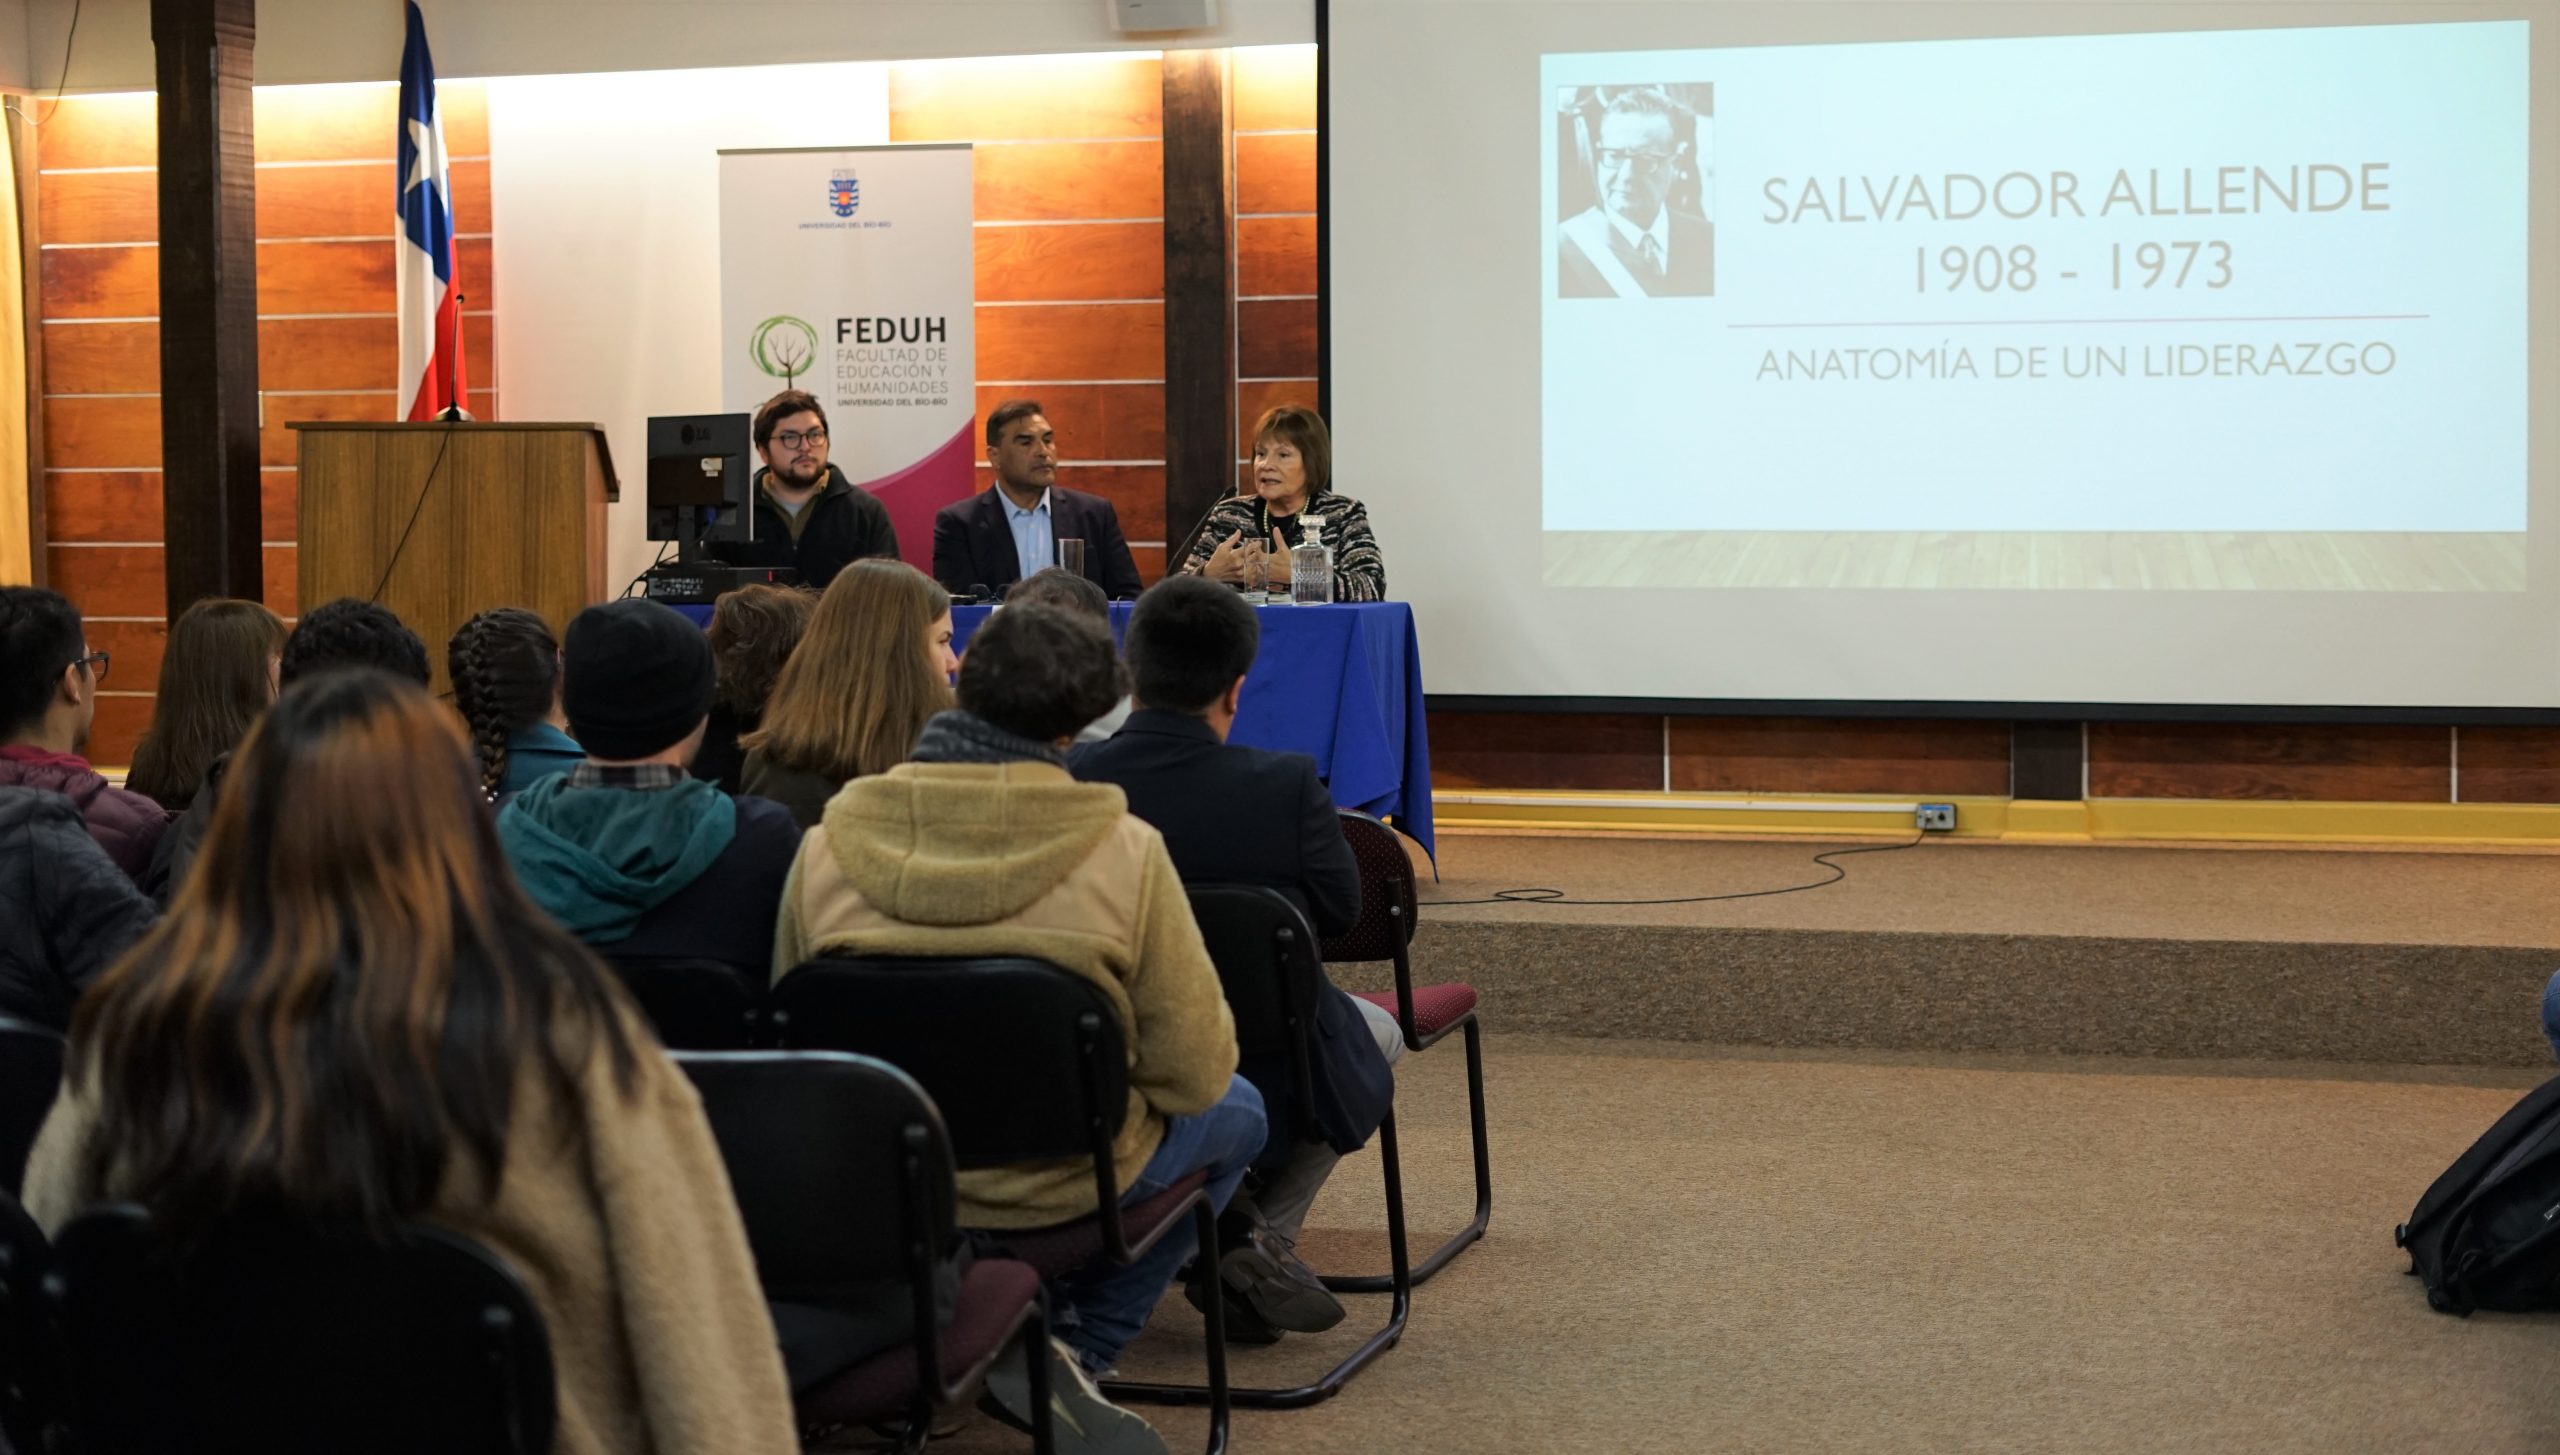 Pedagogía en Historia y Geografía inauguró su año académico con conferencia de la vida de Allende desde una mirada “psicohistórica”